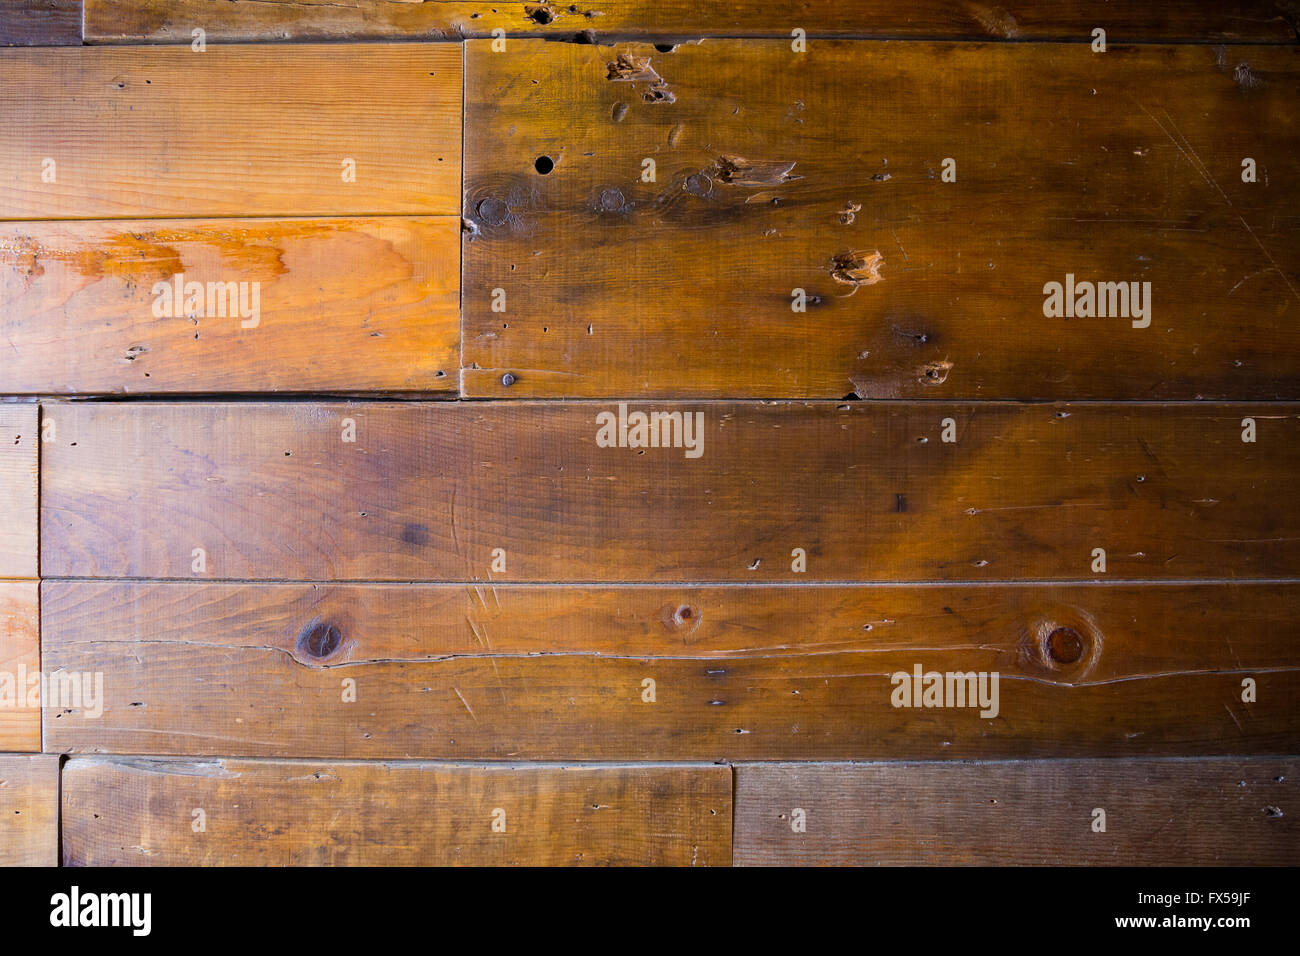 Holz Wand Textur gemacht von zurückgefordert recyceltem Holz aus einer hölzernen Scheune. Stockfoto